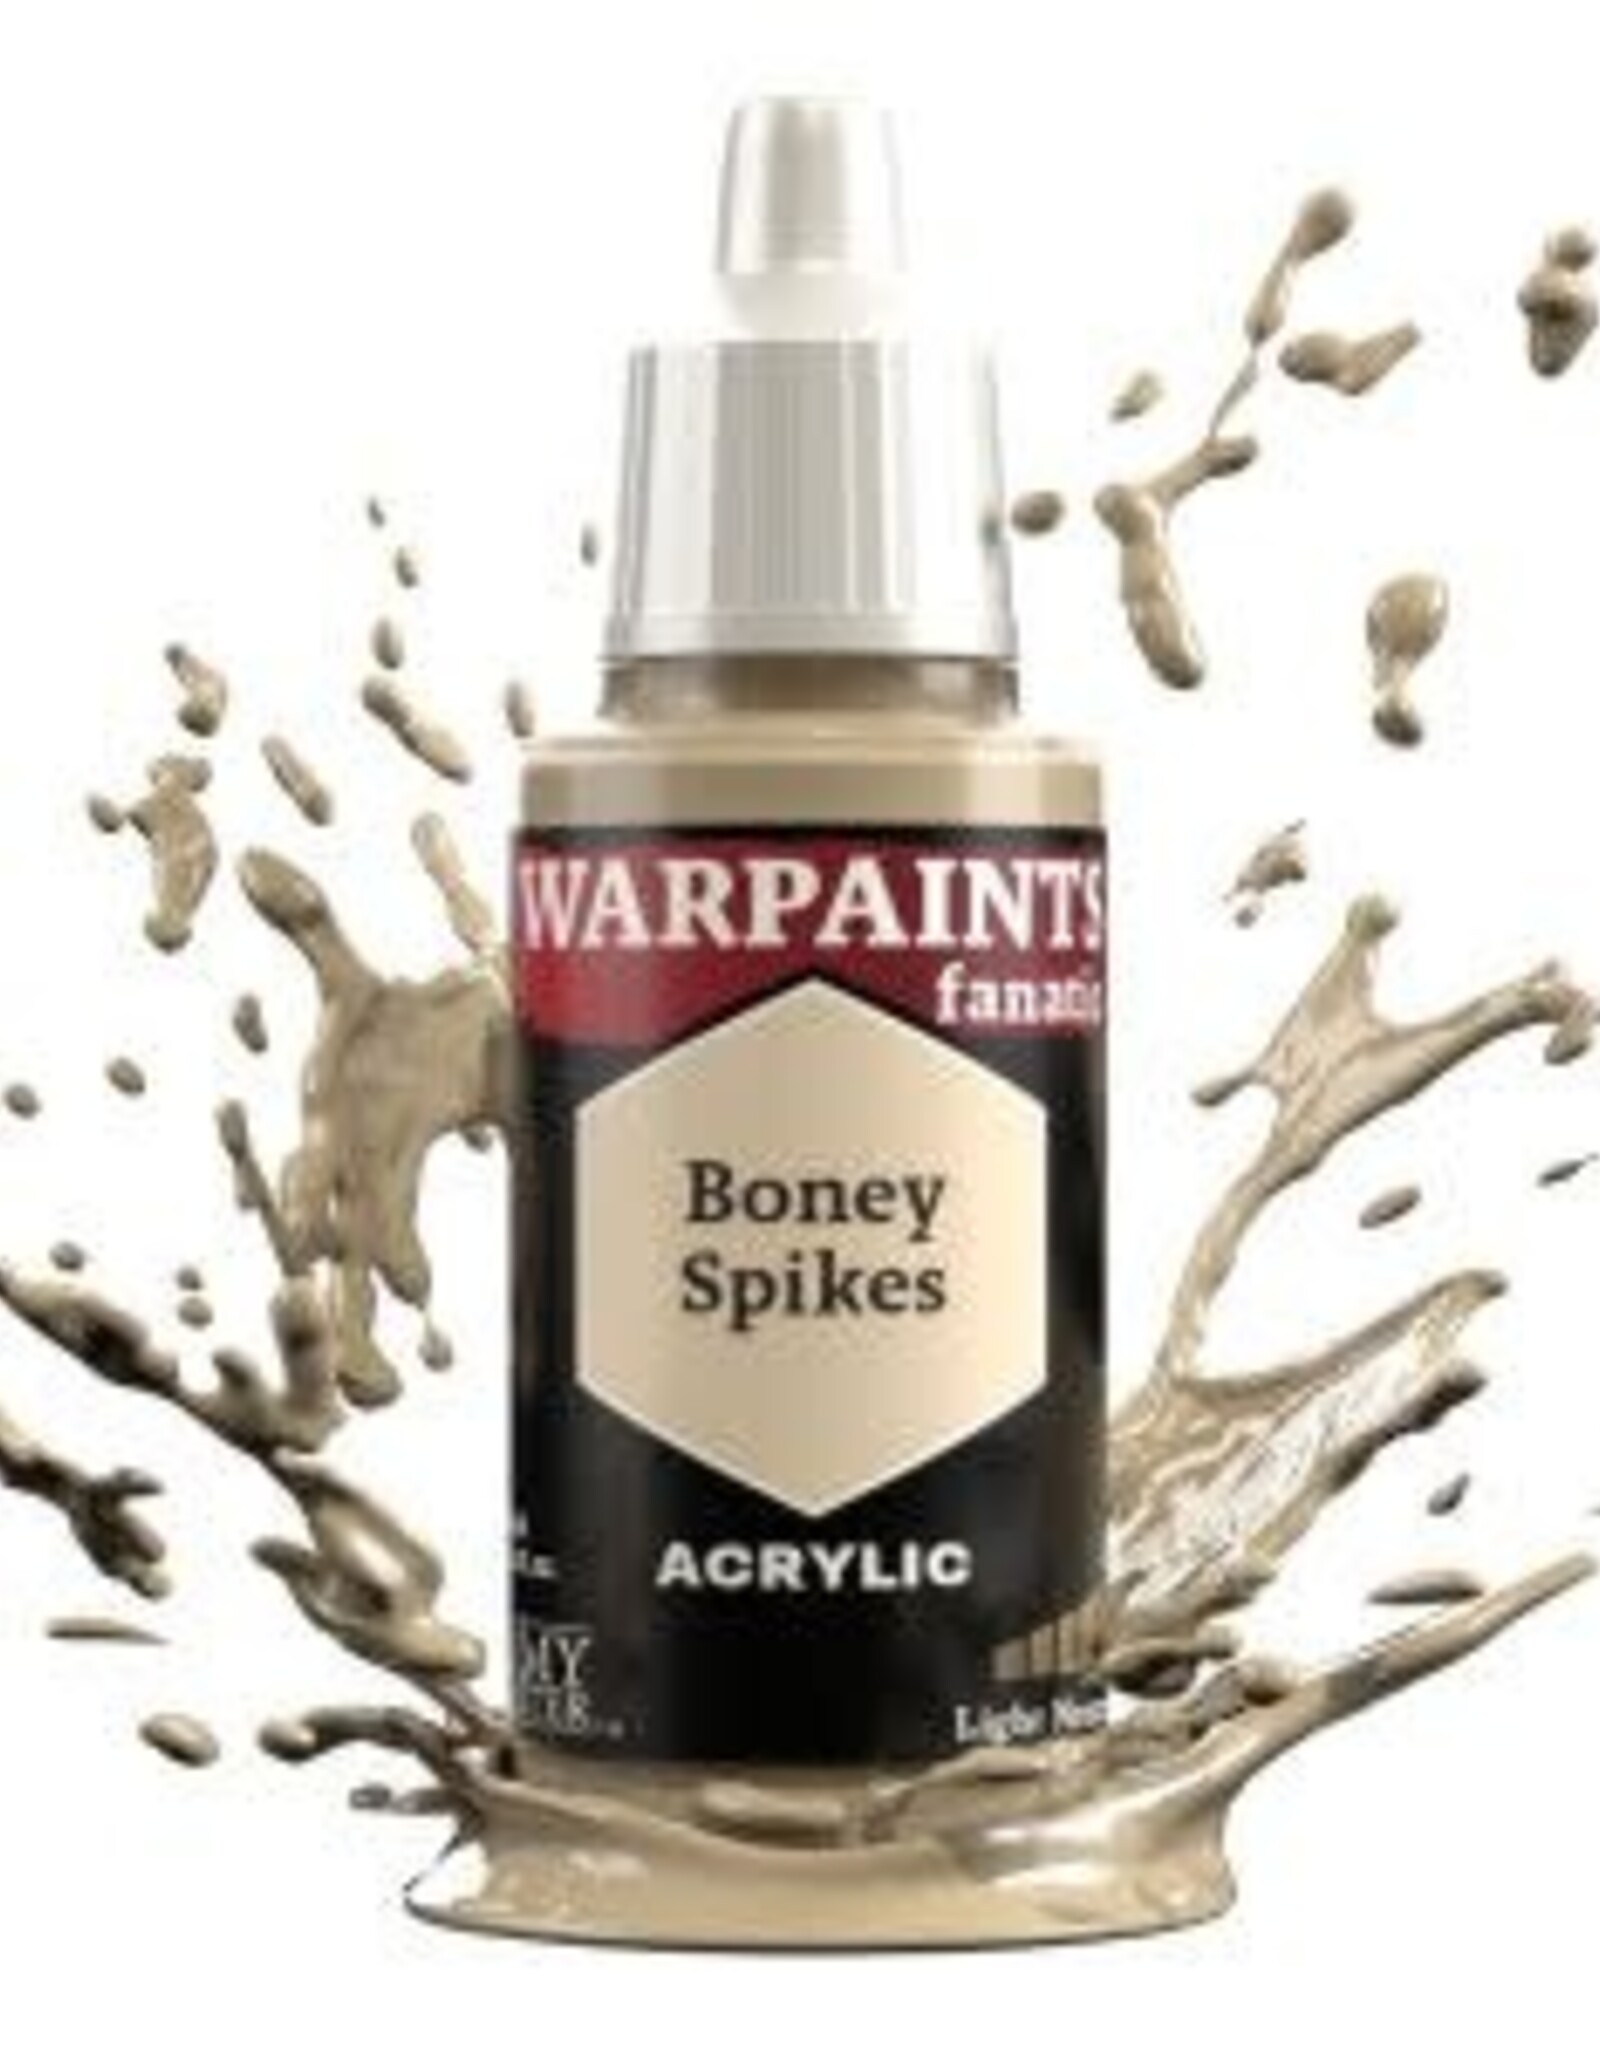 Warpaints Fanatic: Boney Spikes